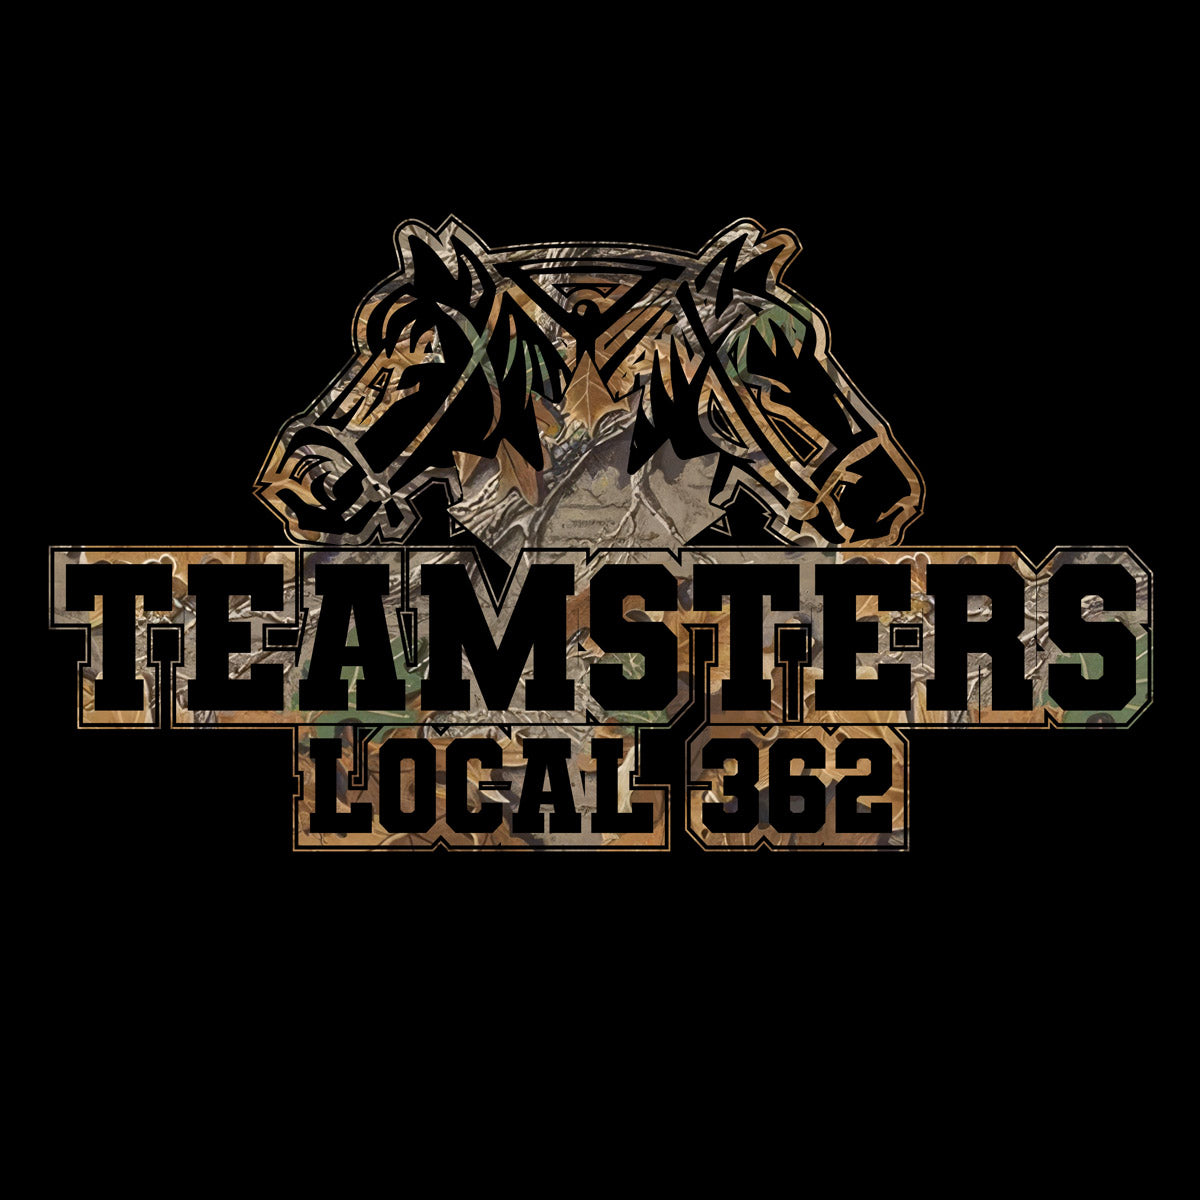 Teamsters 362 - Hunter